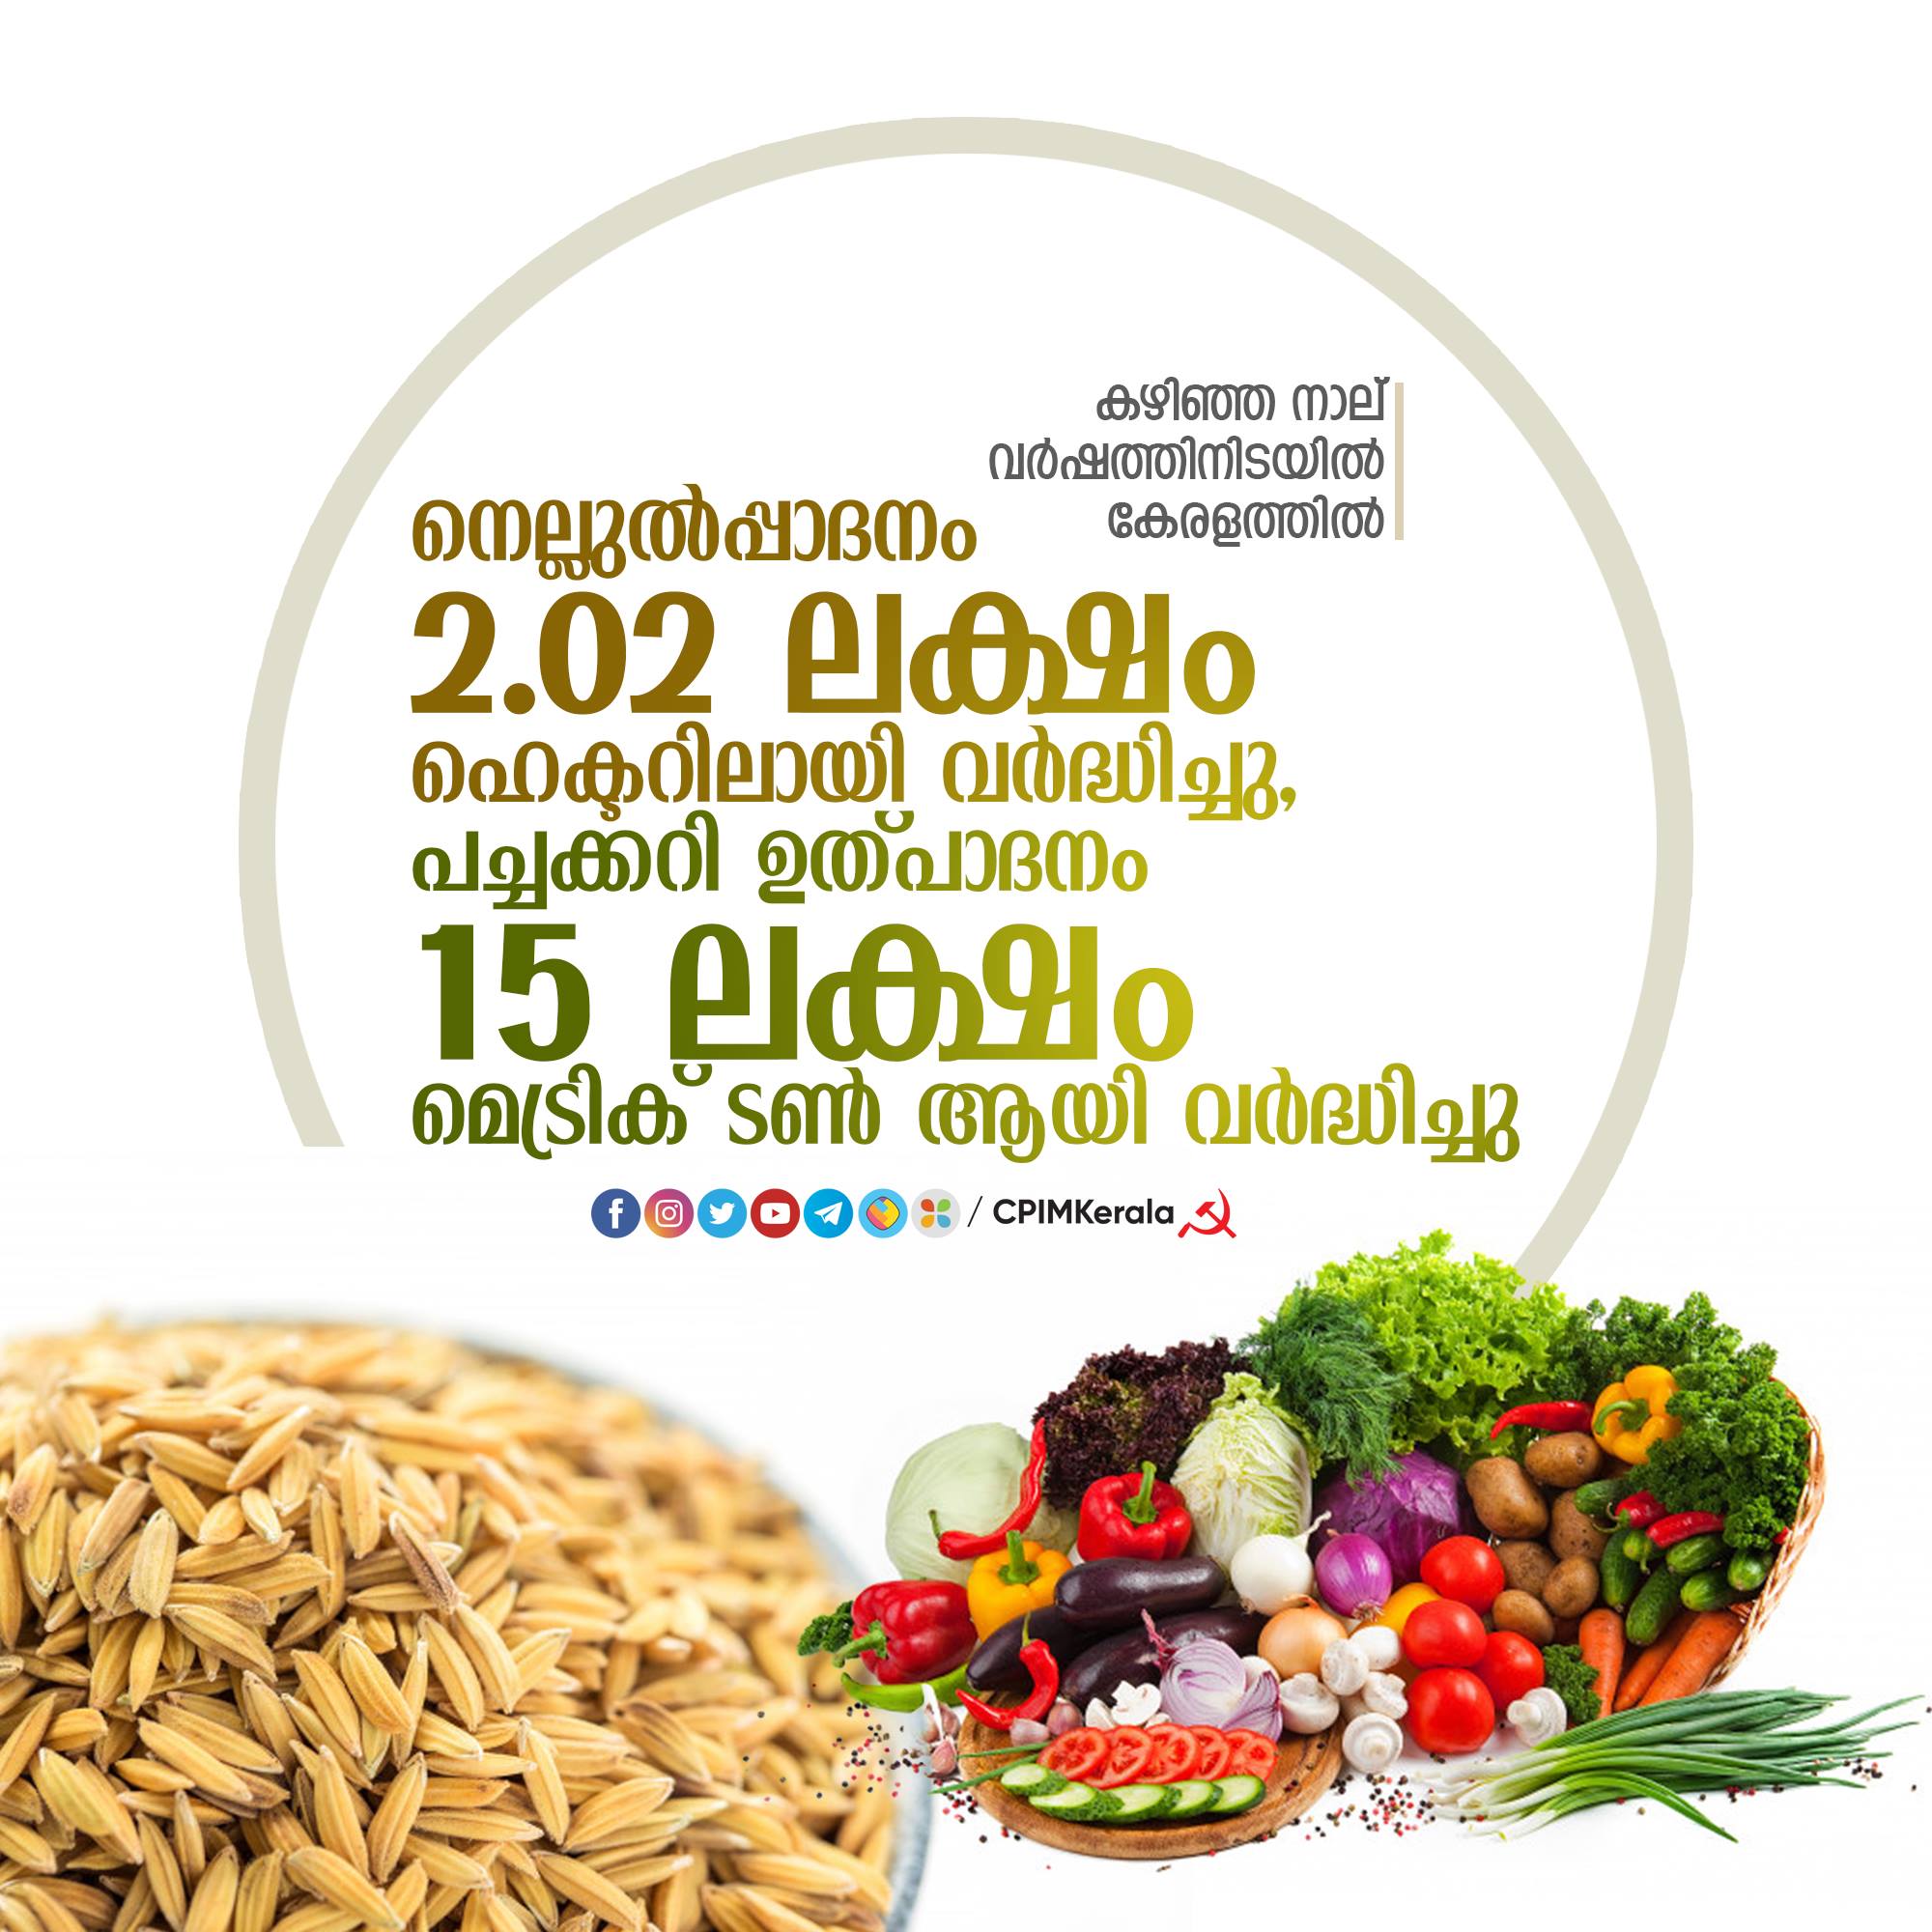 Le Kerala est en train de gagner la bataille de l'autosuffisance alimentaire